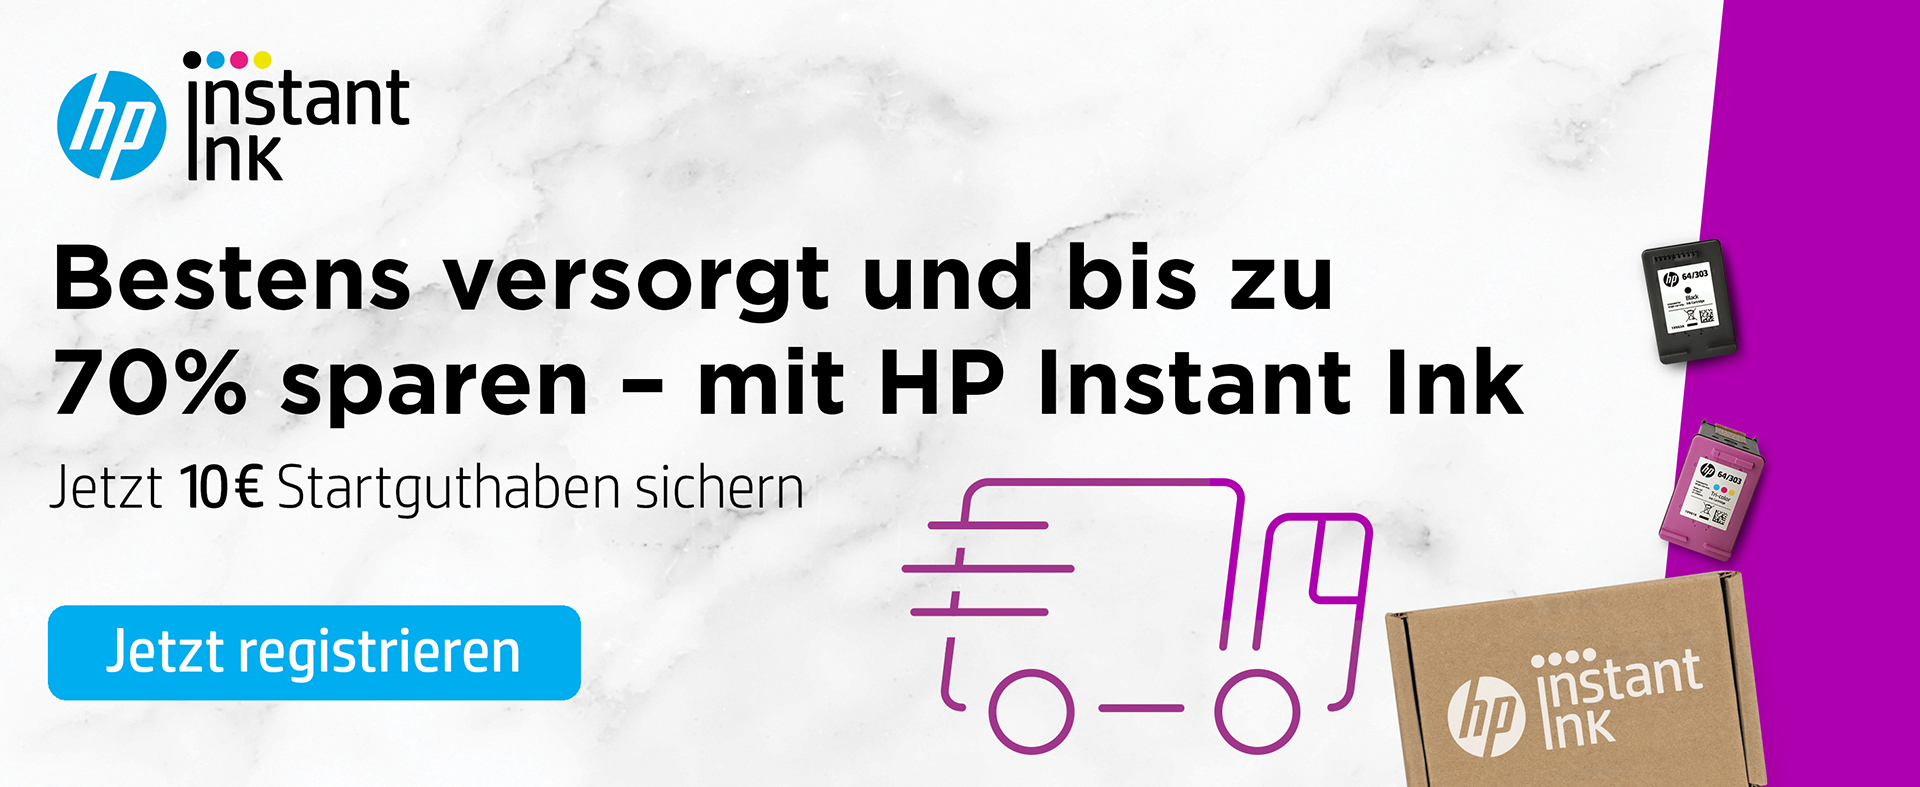 HP Instant Ink - Bestens versorgt. Jetzt 10 € Startguthaben sichern